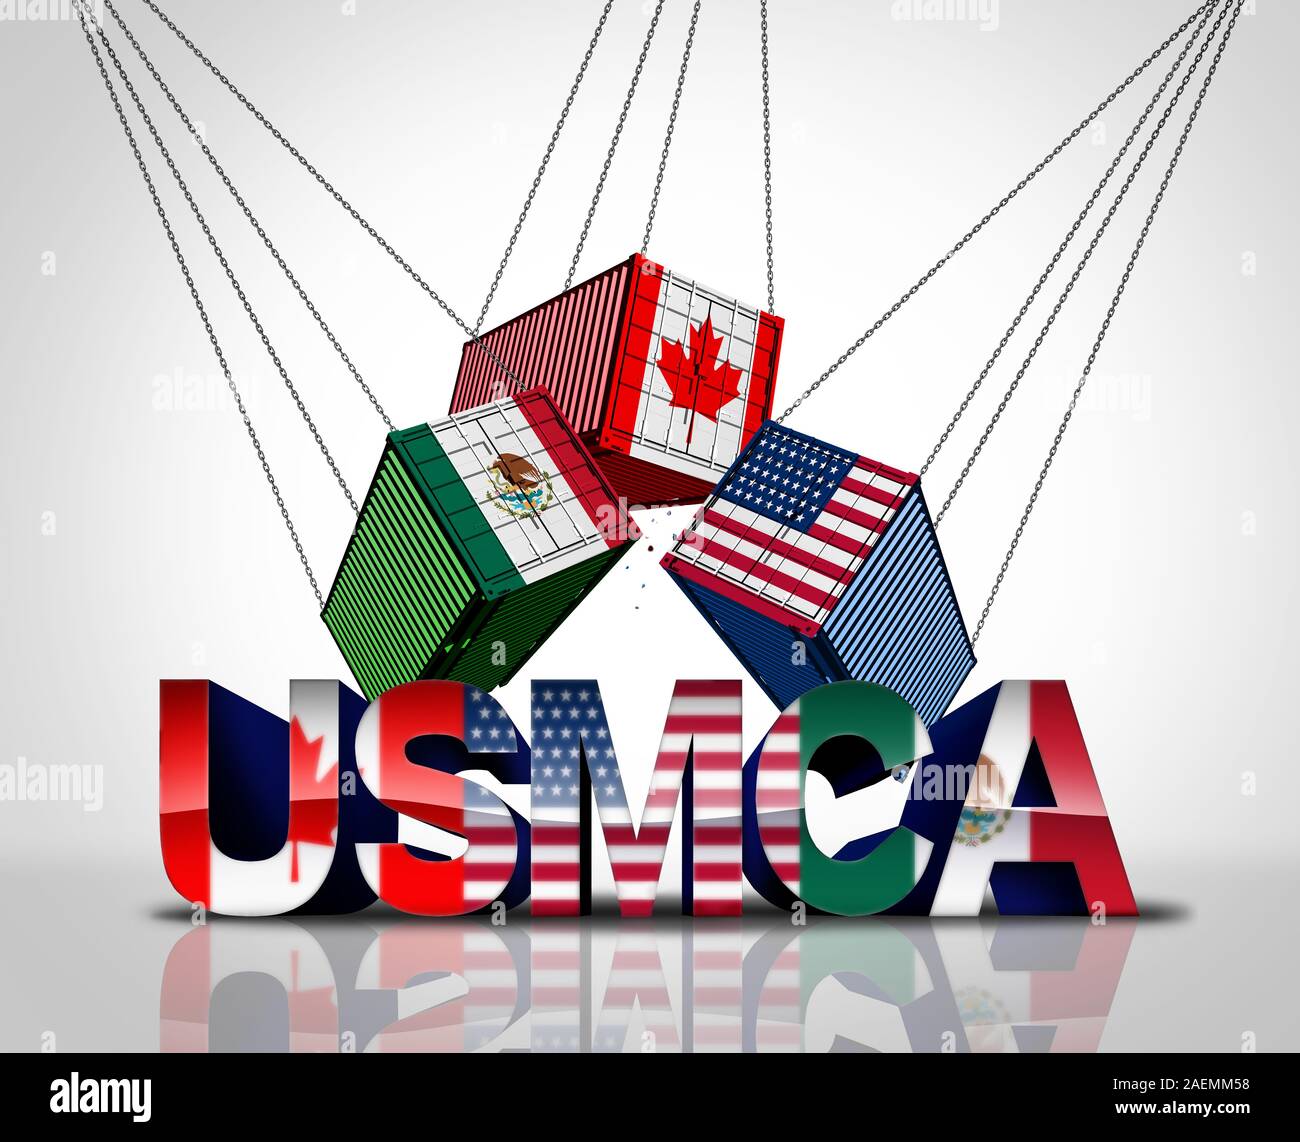 USMCA ou accord de l'ALENA la nouvelle législation Canada États-Unis Mexique Amérique du Nord drapeaux comme un accord commercial négociation et entente économique. Banque D'Images